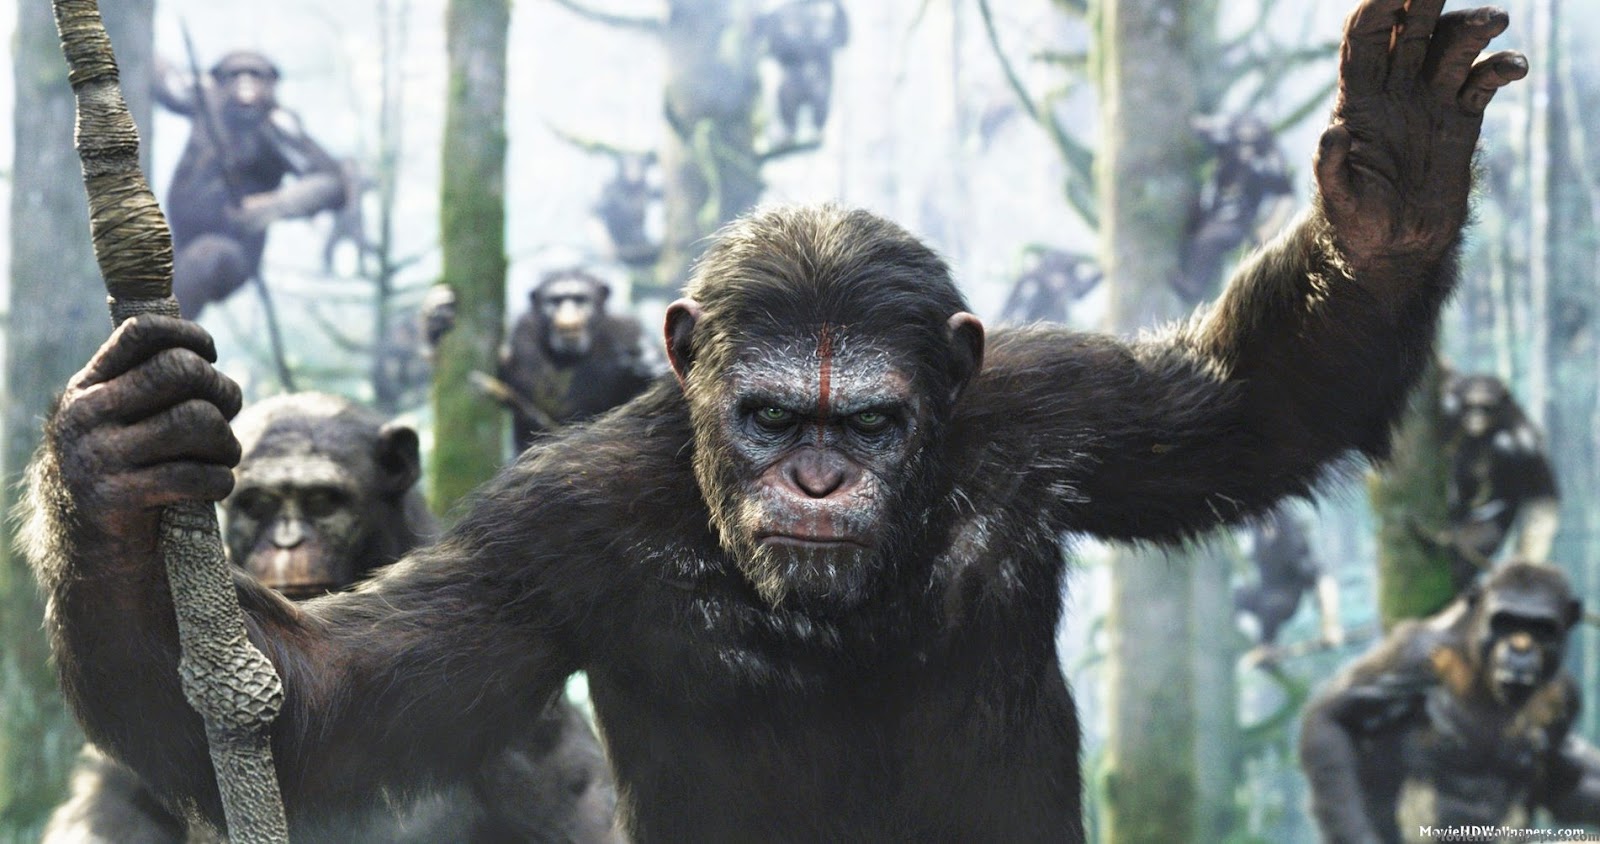 amanecer del planeta de los simios fondo de pantalla,chimpancé común,animal terrestre,primate,humano,hocico